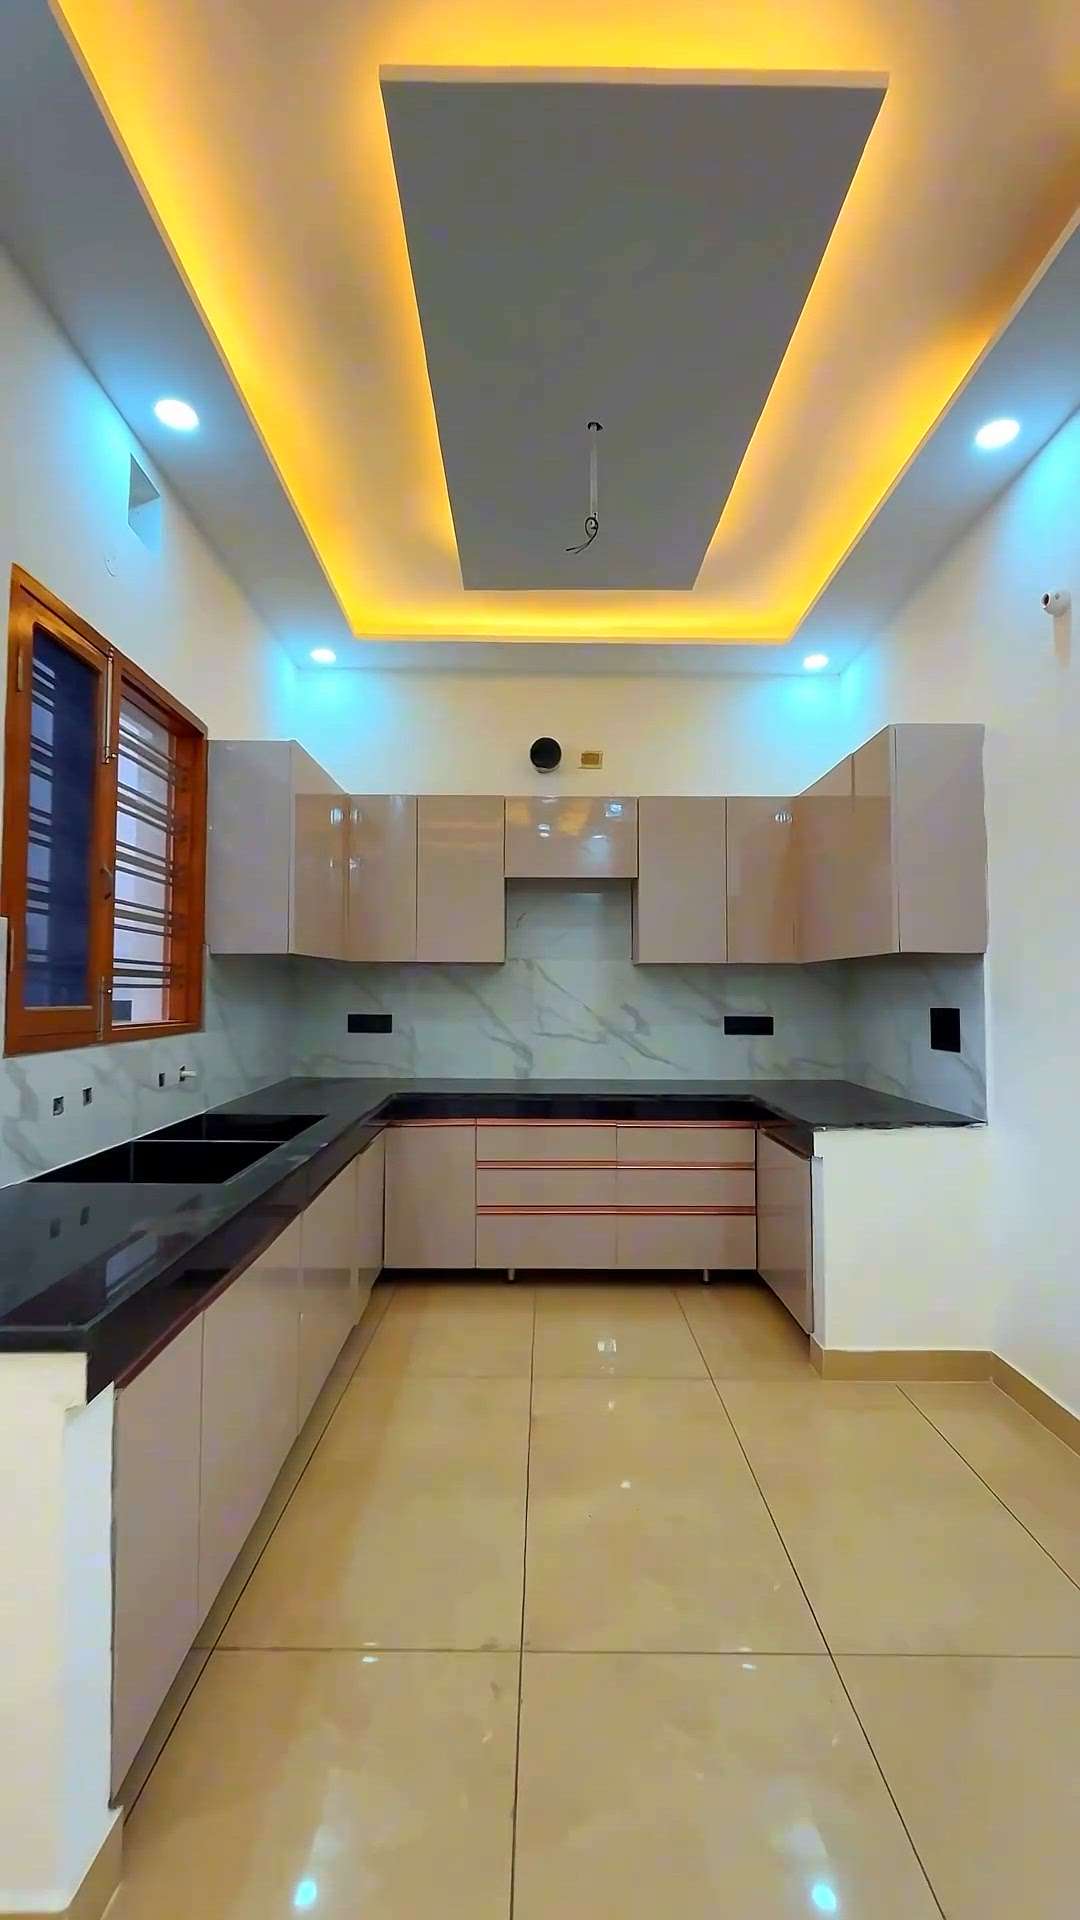 modular kitchen  #KitchenIdeas  #IndoorPlants  #InteriorDesigner  #KitchenInterior  #Architectural&Interior  #interriordesign  #ModularKitchen